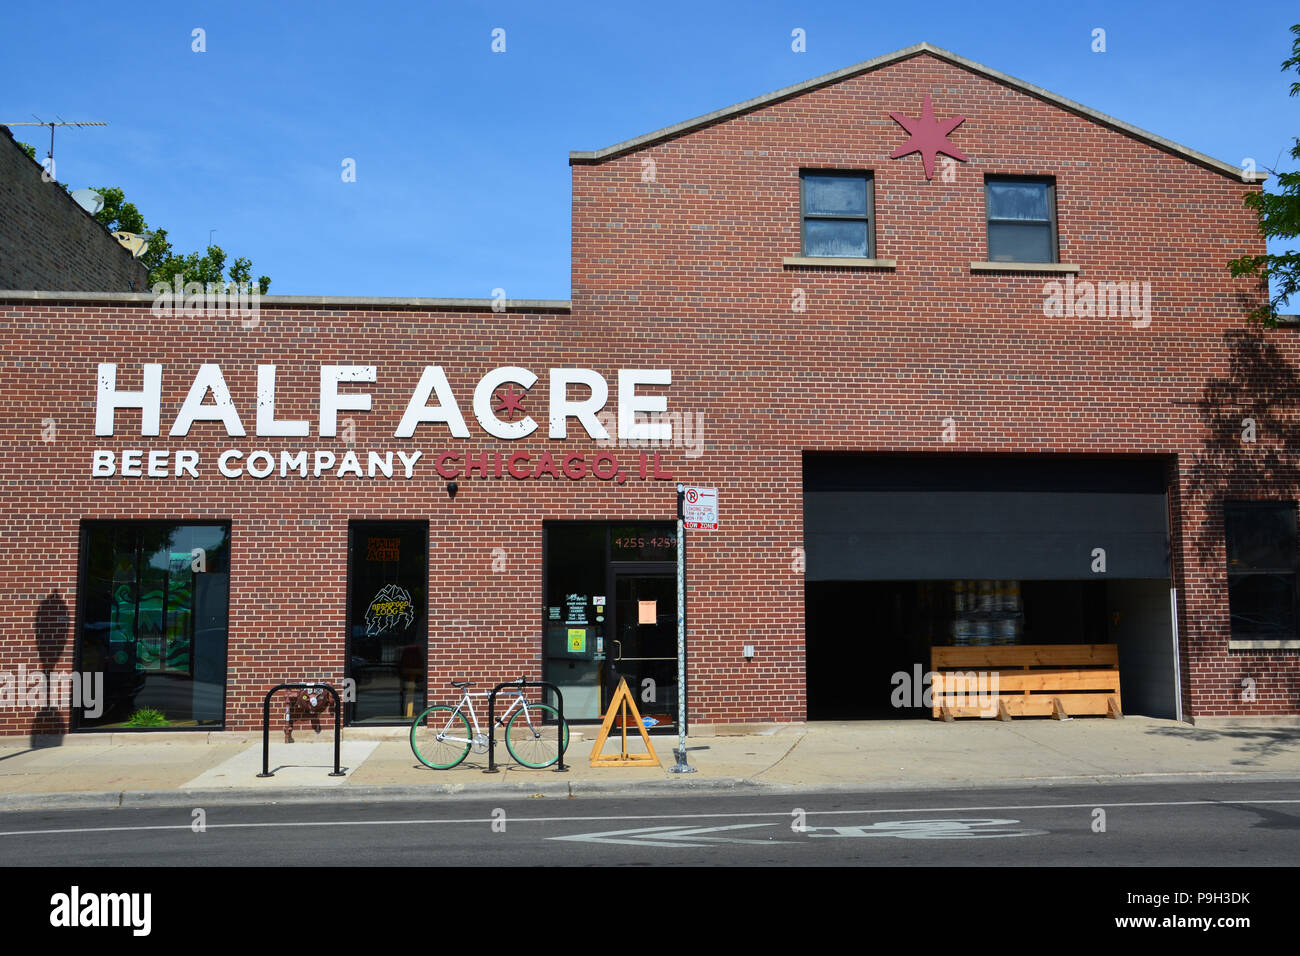 Halben Hektar ist eine lokale Handwerk Brauerei im Norden Zentrum Viertel von Chicago Stockfoto